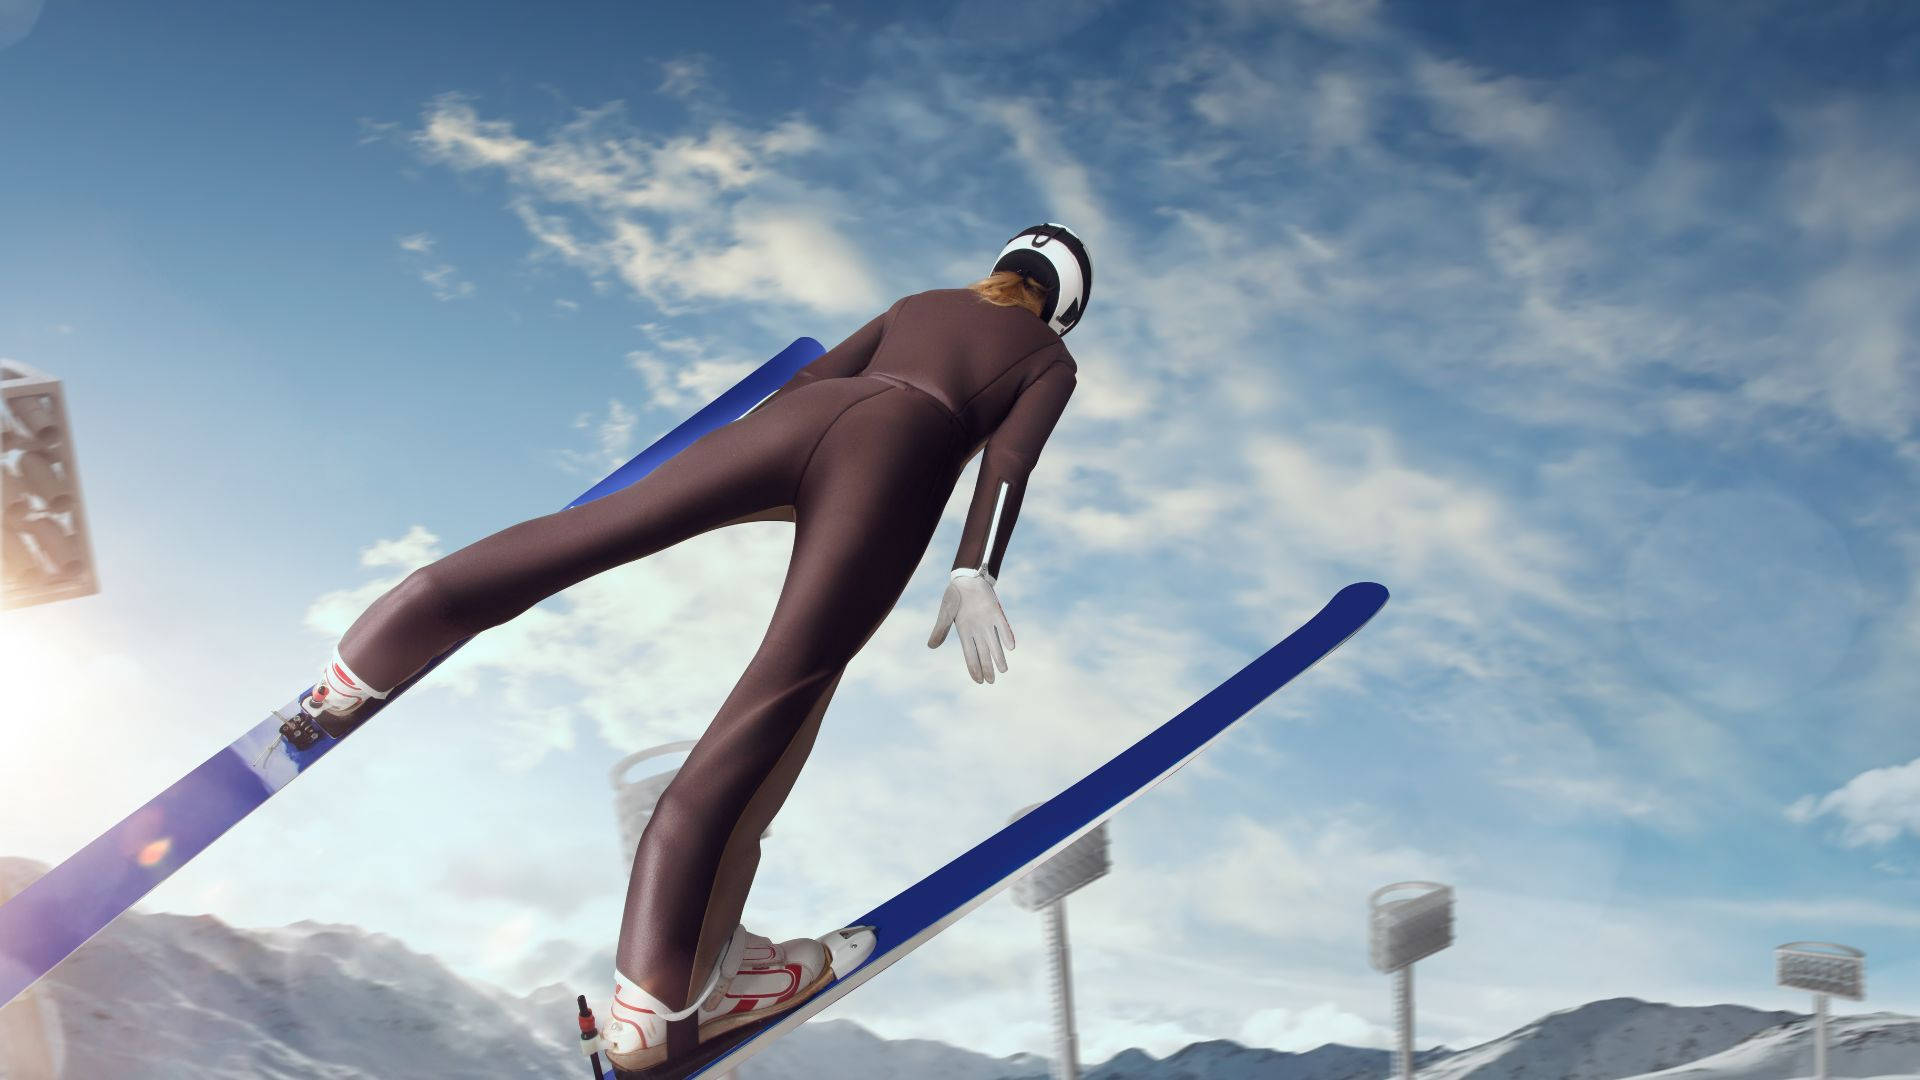 Ski Jumping Sports Game Wallpaper